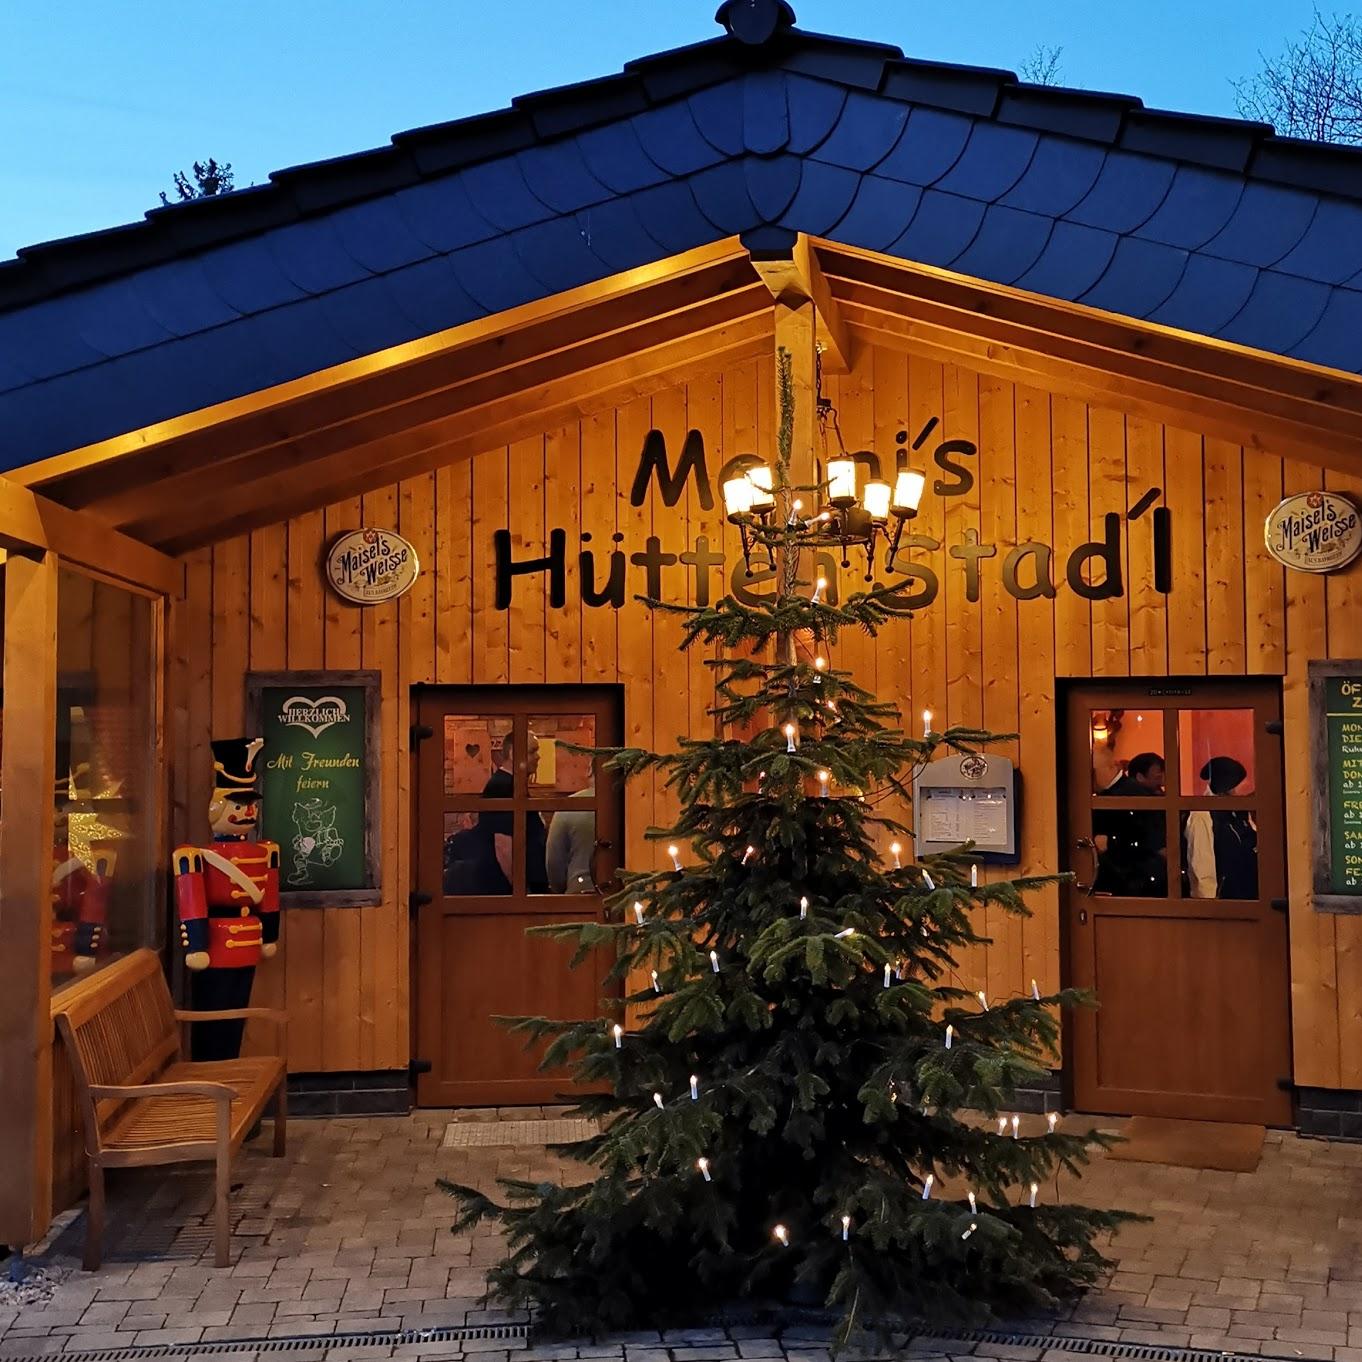 Restaurant "Mannis-Hütten-Stadl" in  (Westerwald)